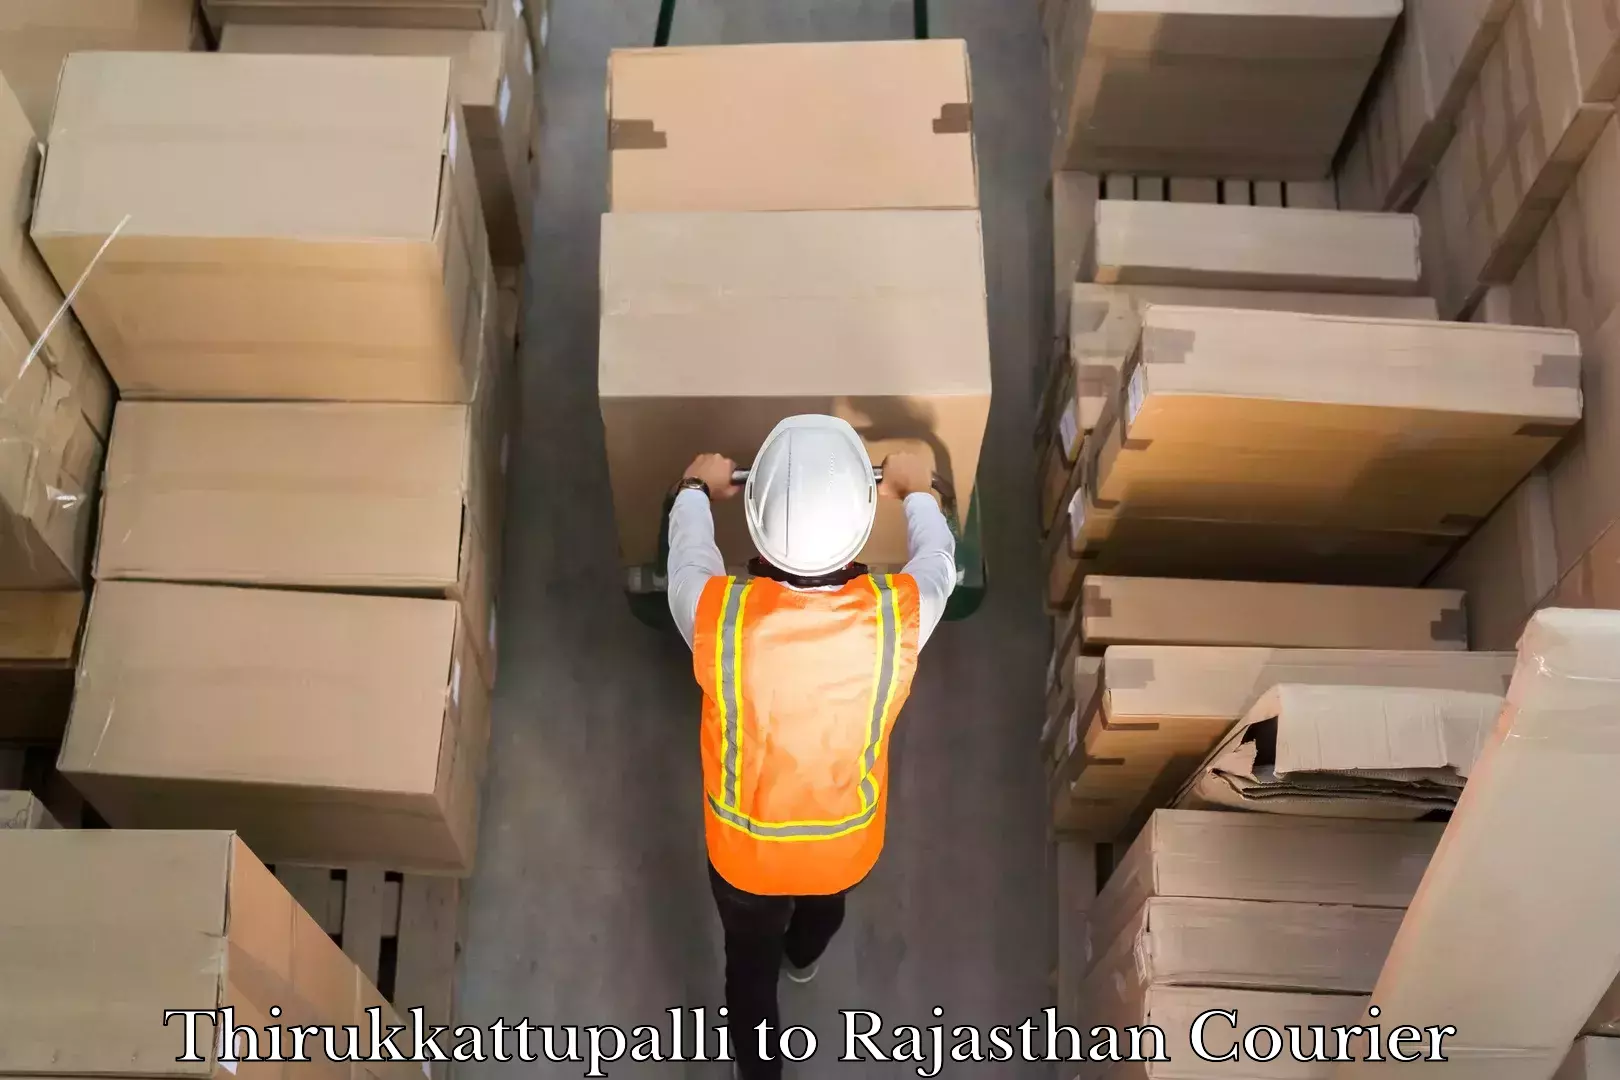 Efficient parcel service Thirukkattupalli to Rajasthan